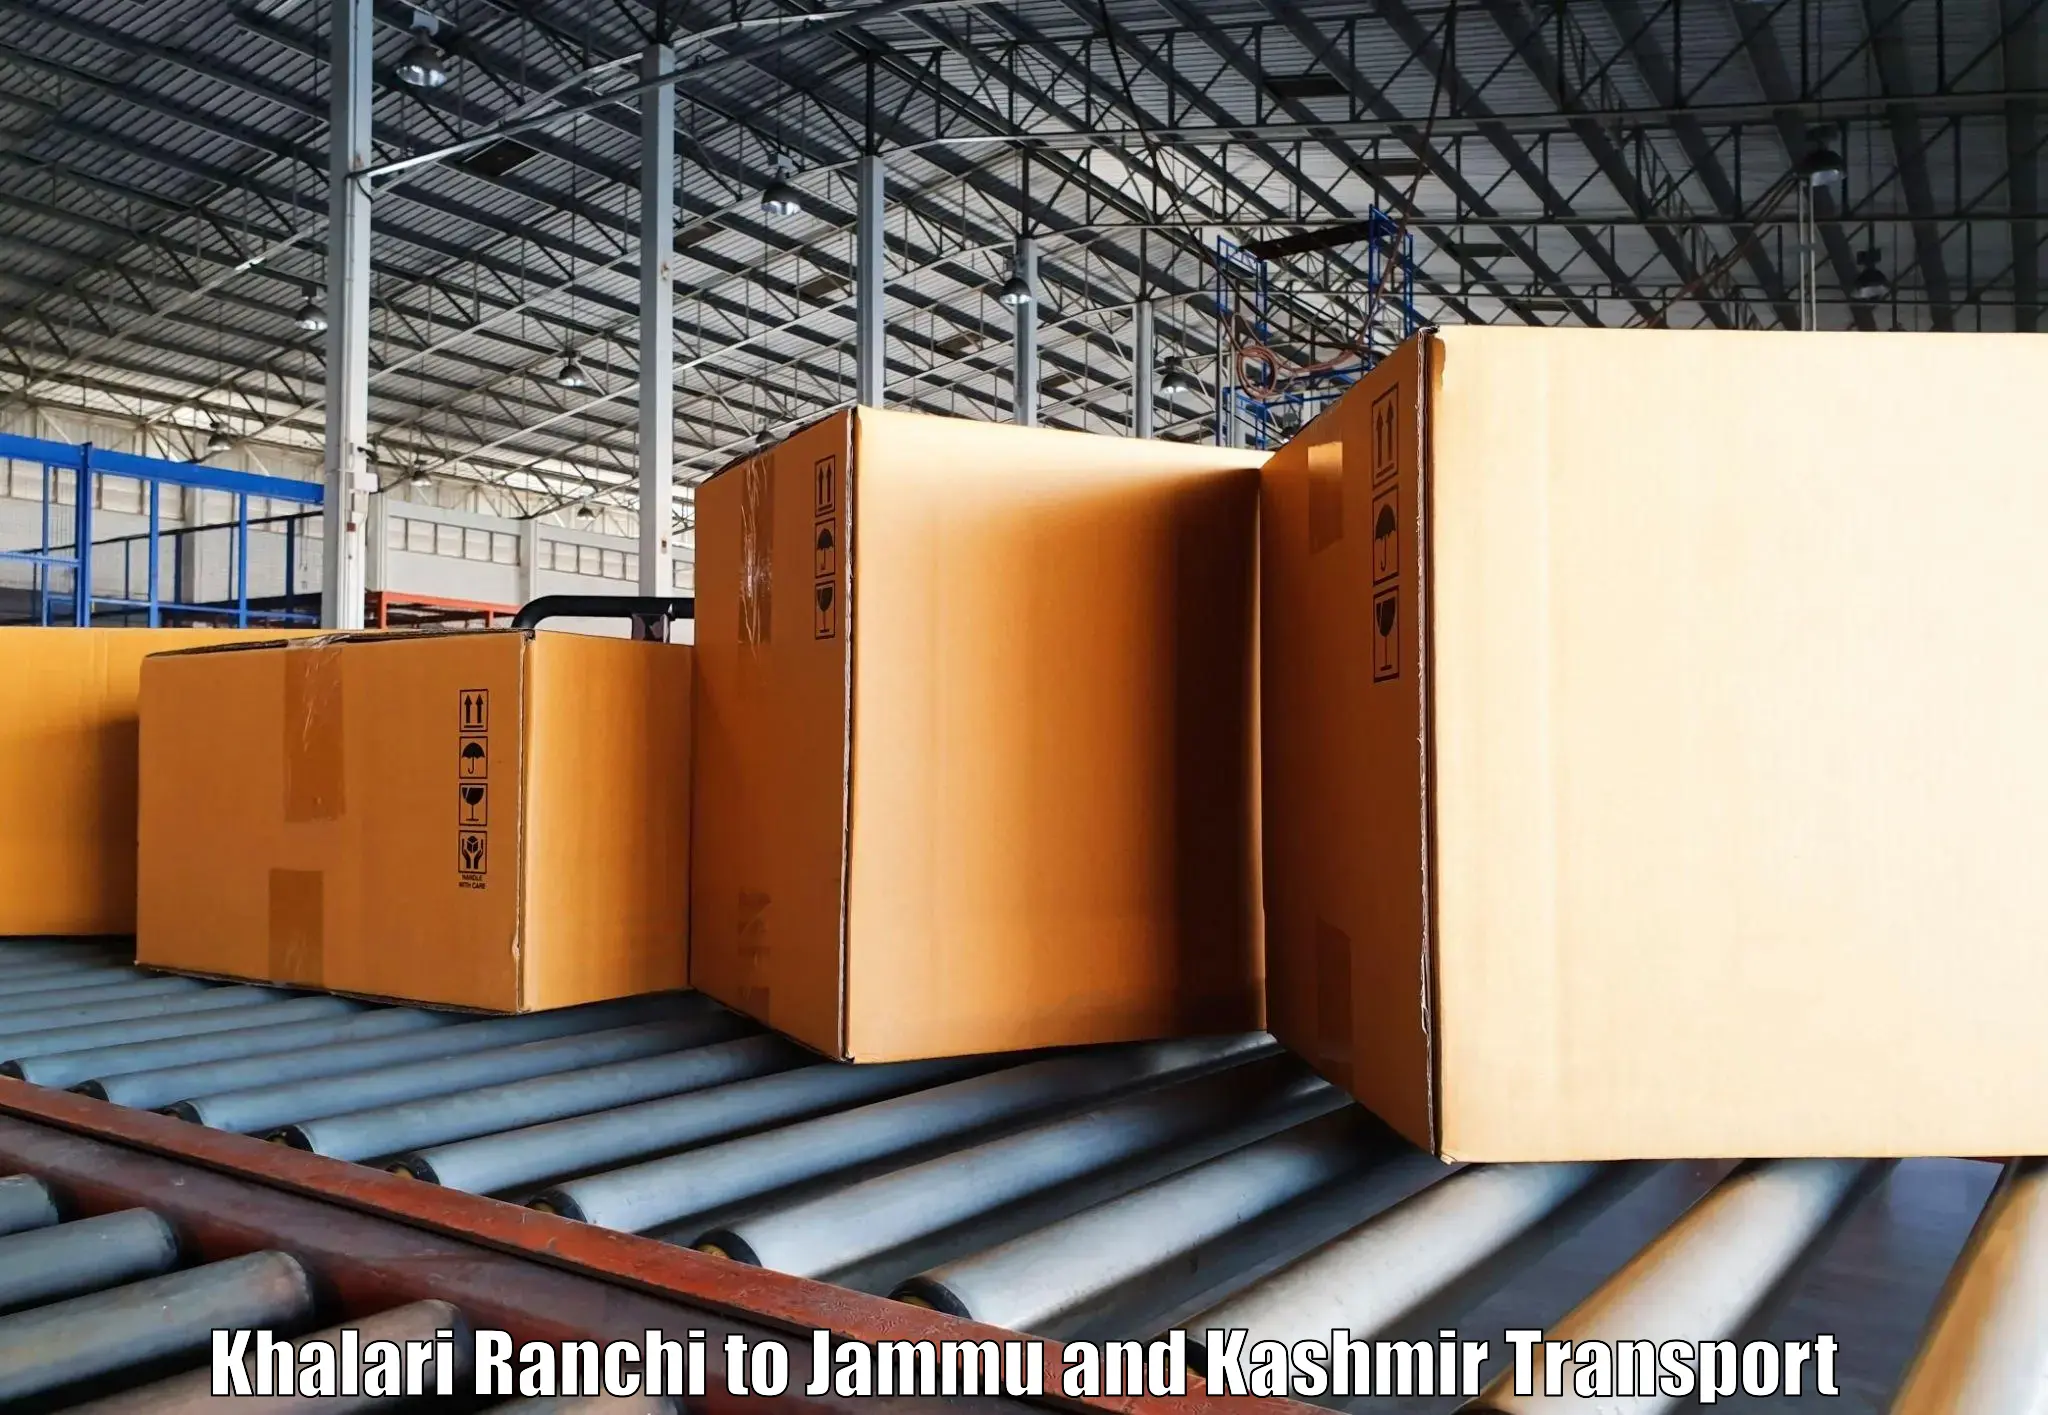 Truck transport companies in India Khalari Ranchi to Chenani